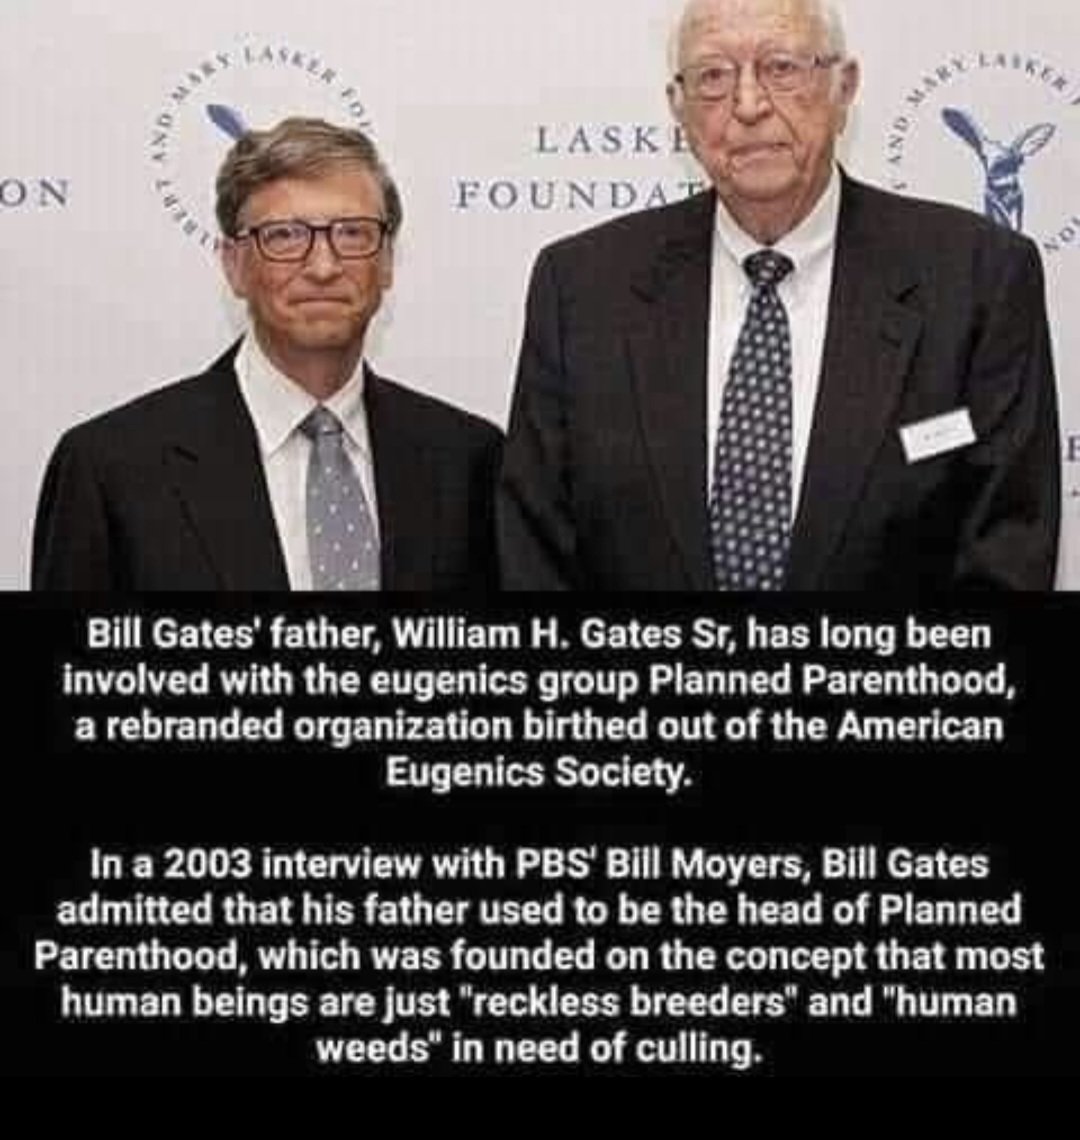 Lo sai che il padre di Bill era un gran sostenitore dell'eugenetica?